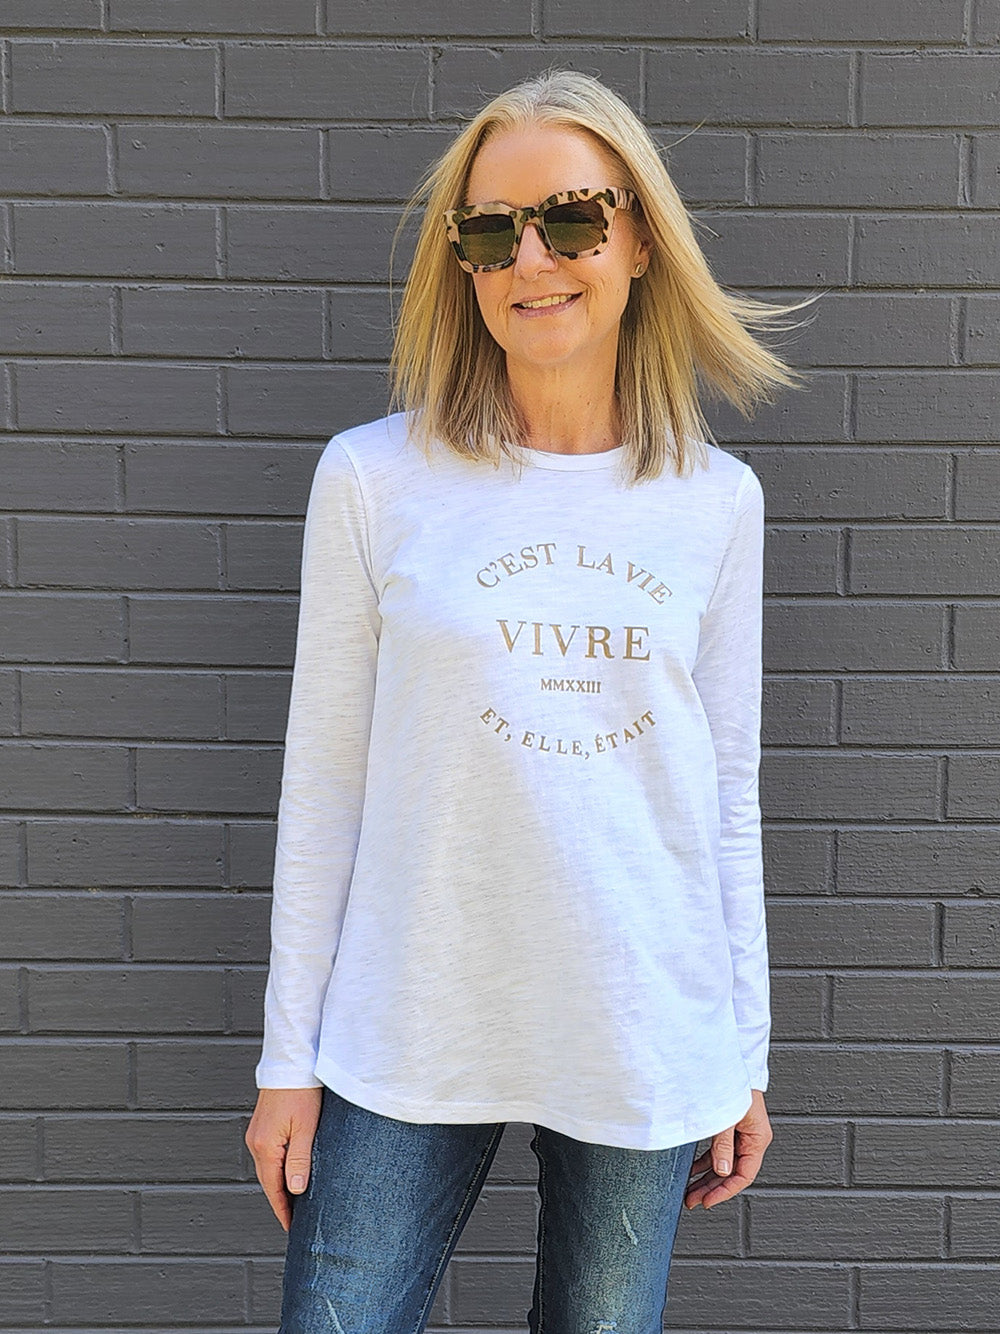 C'est La Vie T-shirt - White/Rose